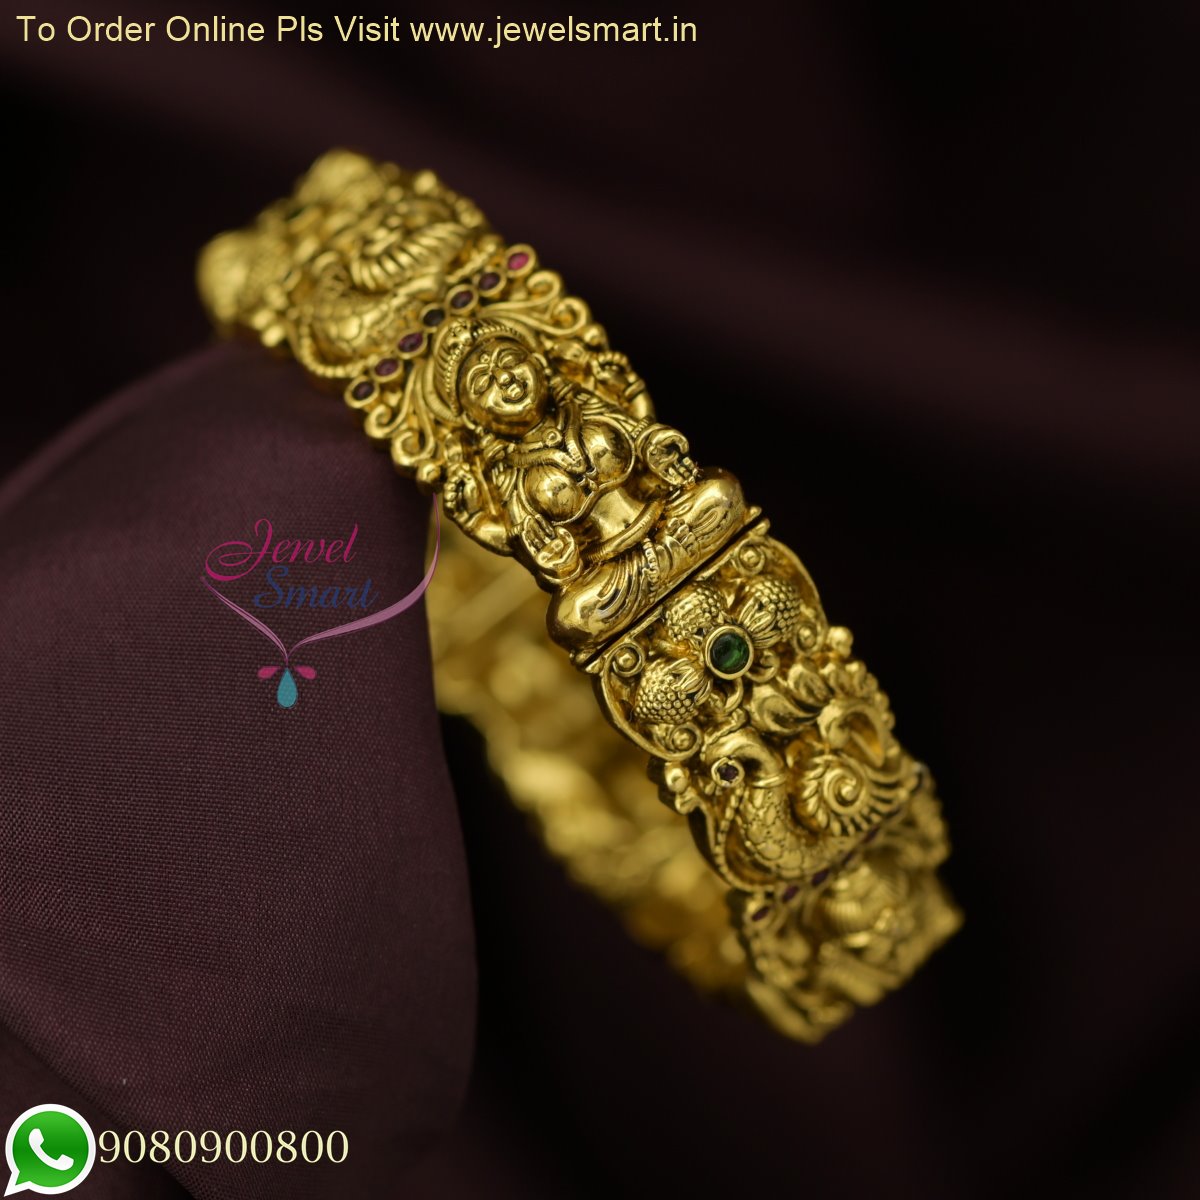 Charm Bracelet, Hmlai 3pcs Charm Women Bracelet Gold India | Ubuy